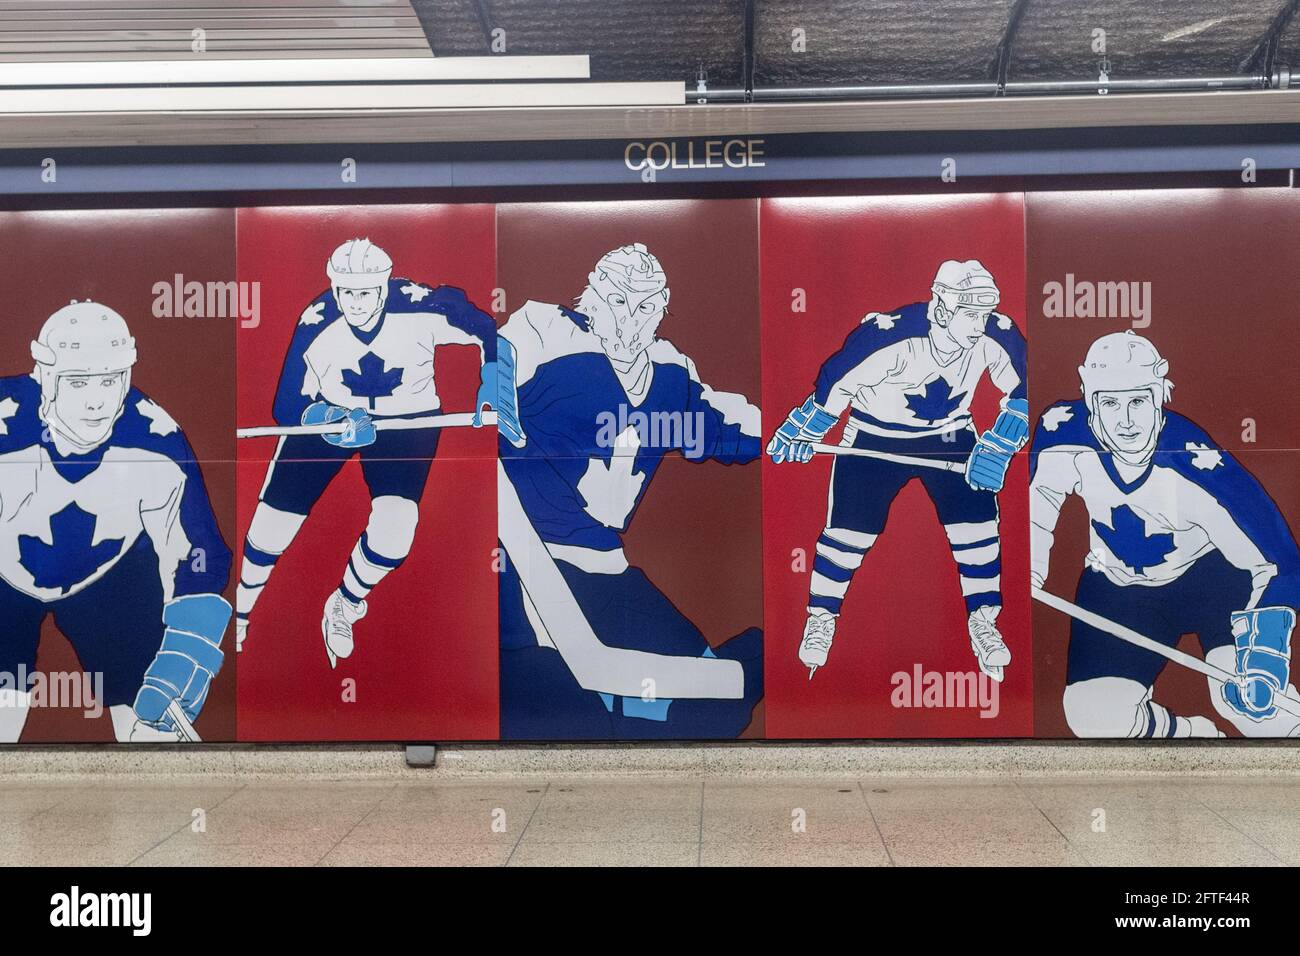 Programme d'art public TTC. L'art urbain sur le thème du Maple Leaf Hockey à la station de métro College de Toronto, Canada. TTC signifie Toronto Transit Commission Banque D'Images